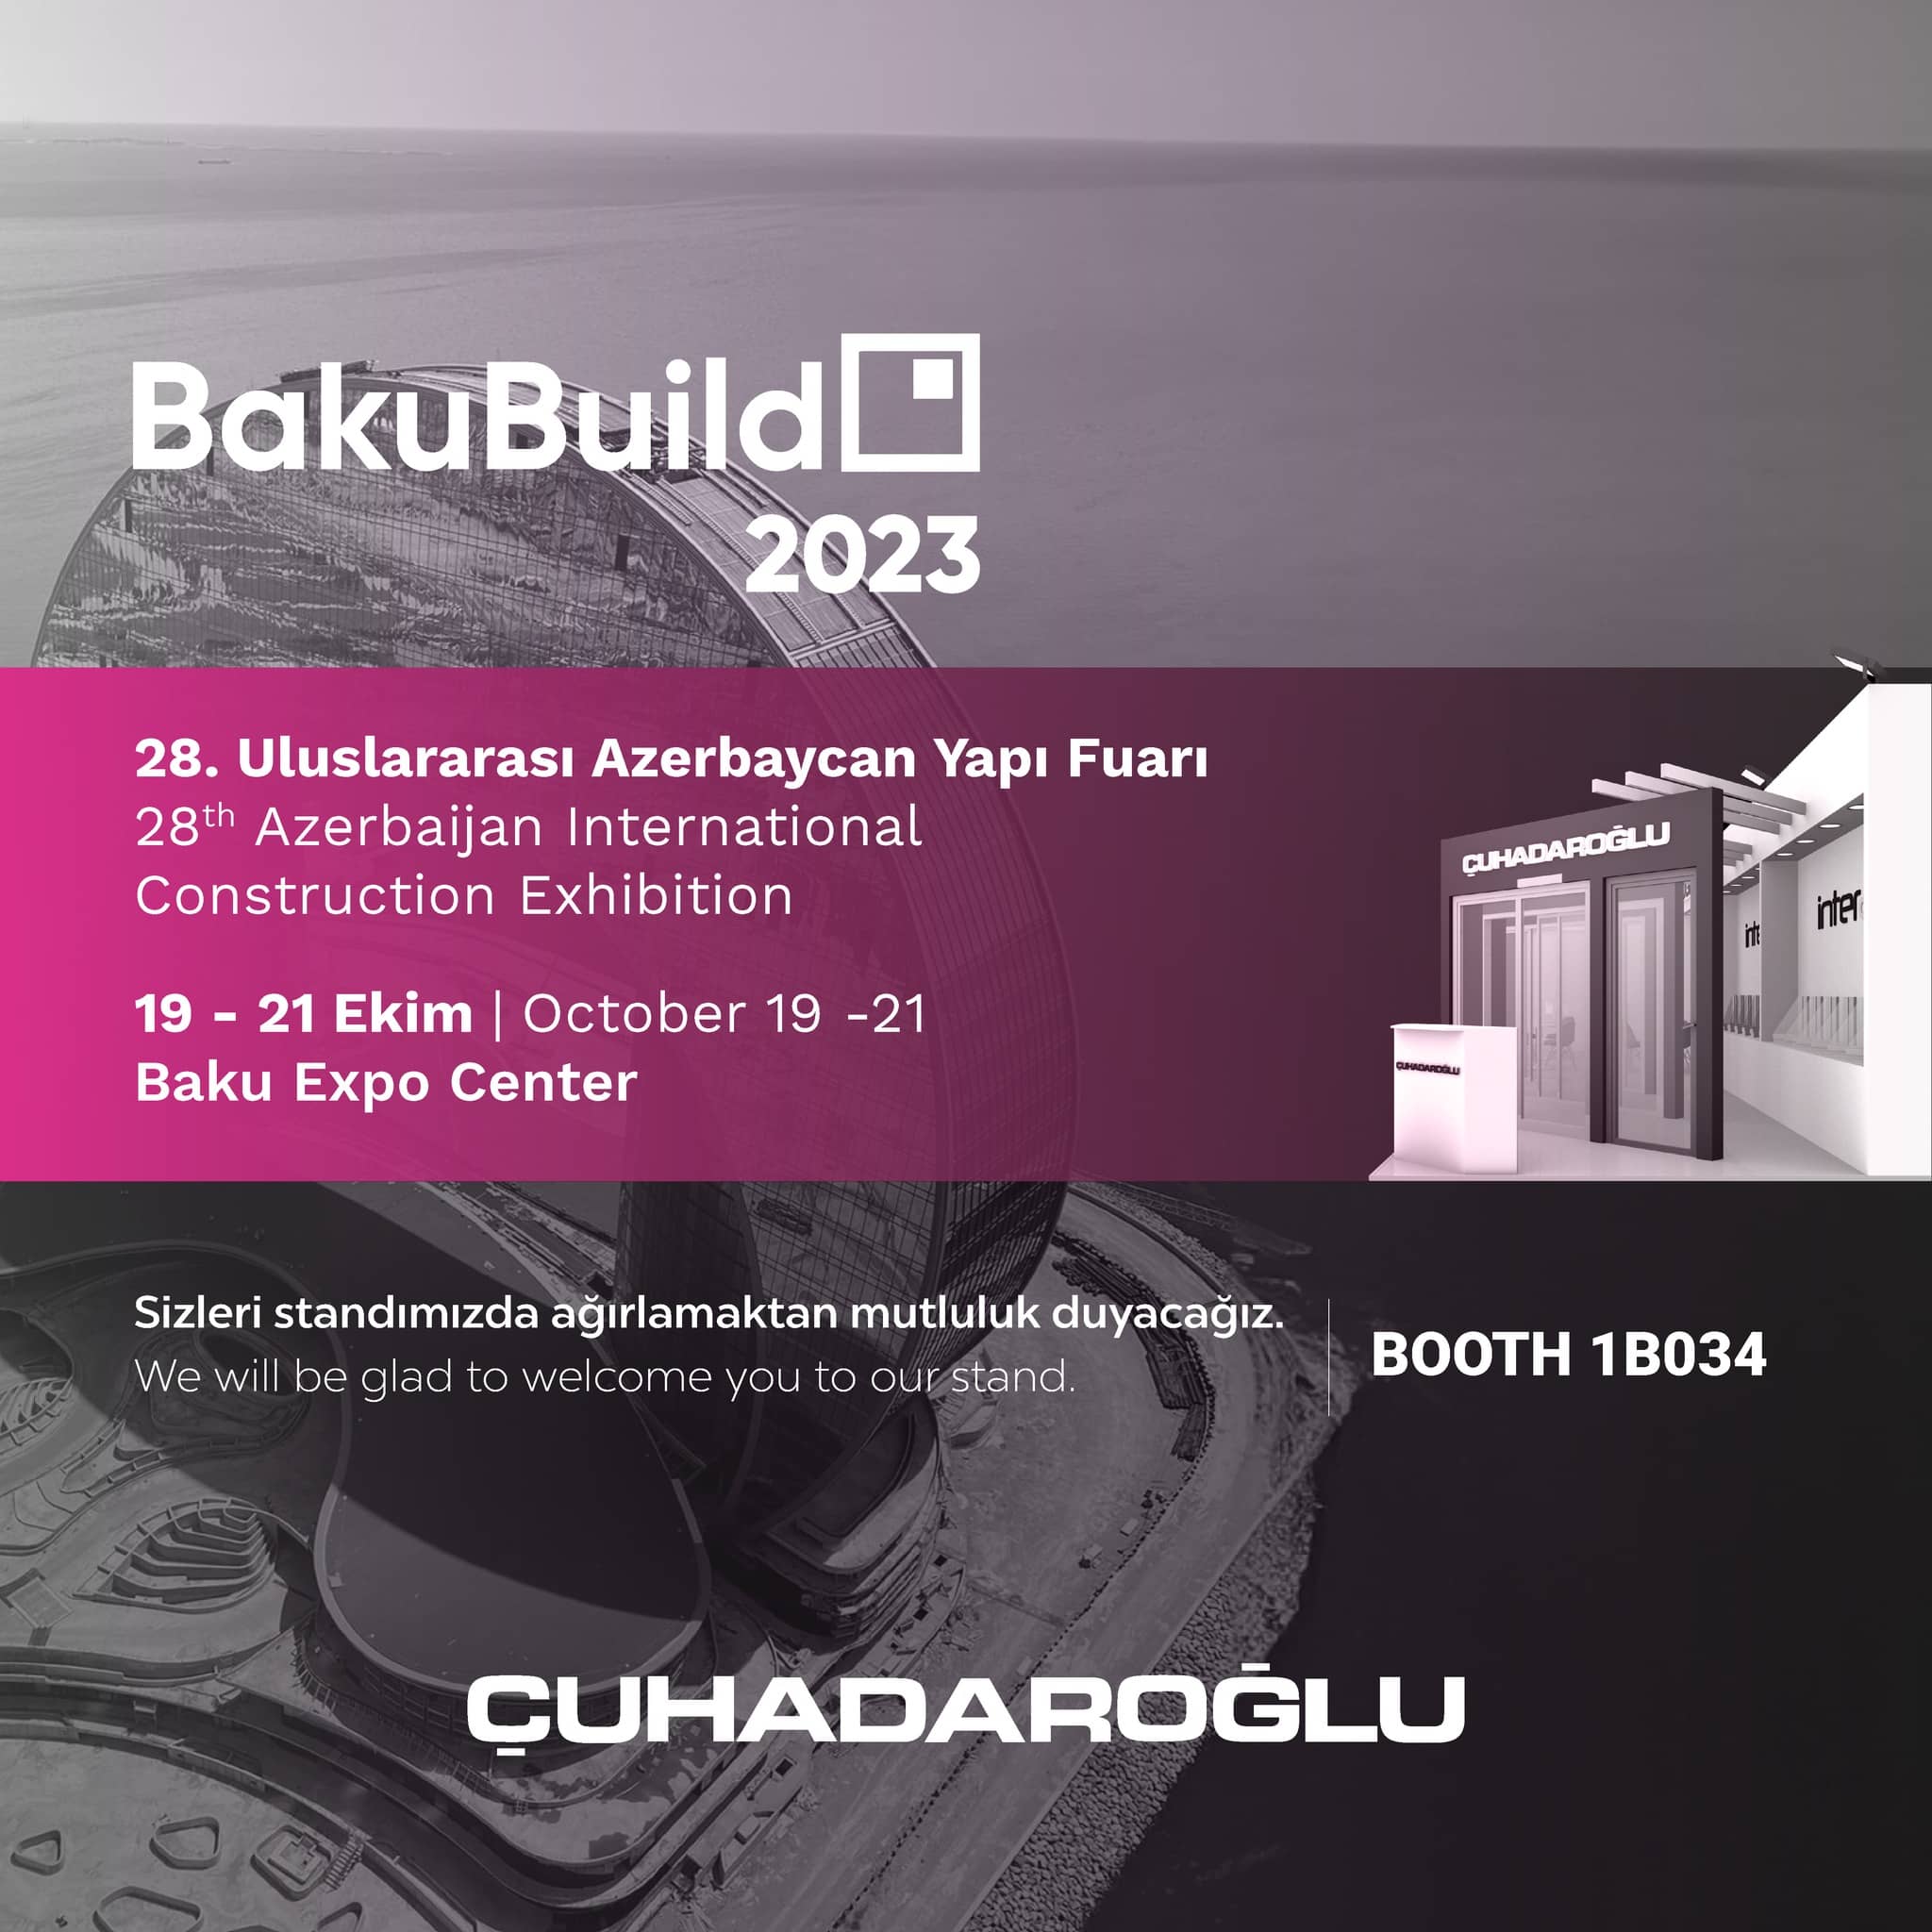 BakuBuild 2023 Azerbaycan Yapı Fuarı